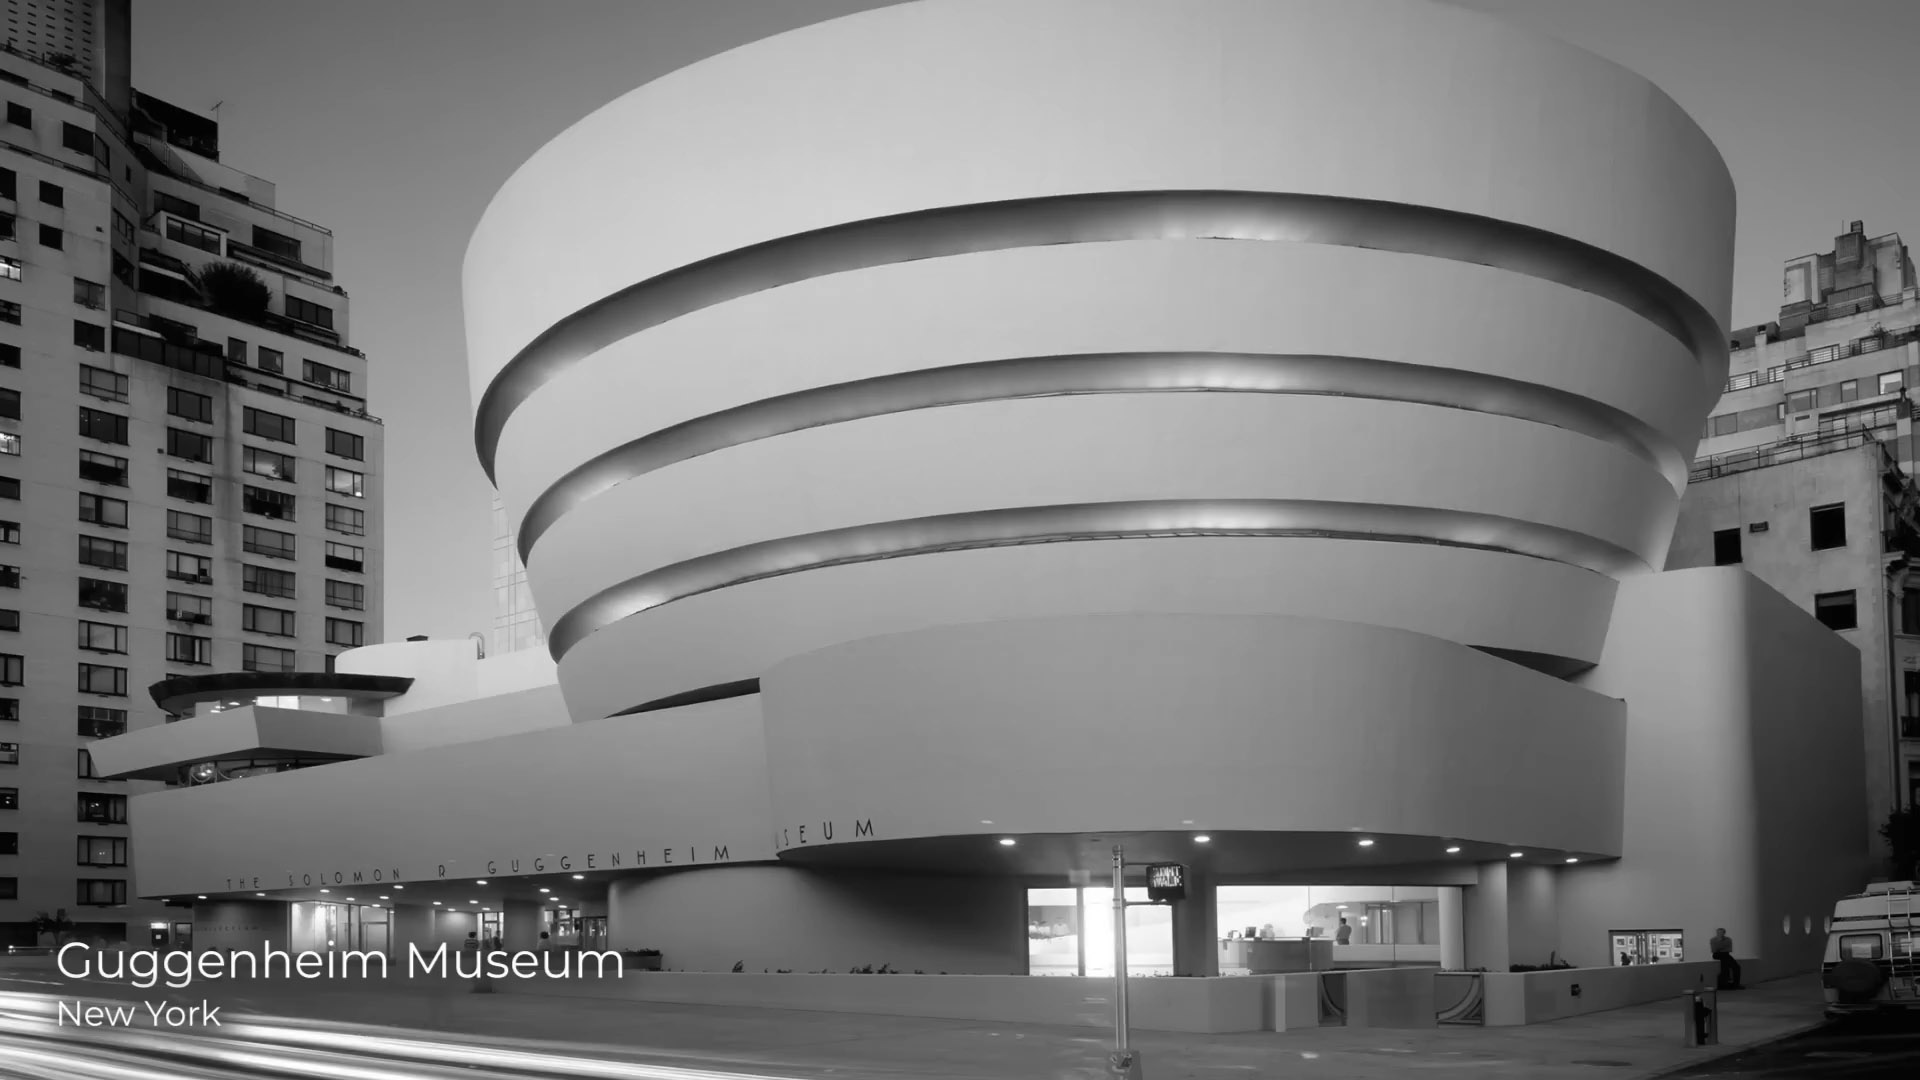 弗兰克·劳埃德·赖特,Frank Lloyd Wright,有机建筑,纽约古根海姆美术馆,赖特建筑视频,赖特作品,东京帝国饭店,流水别墅,田园学派,最伟大的美国建筑师